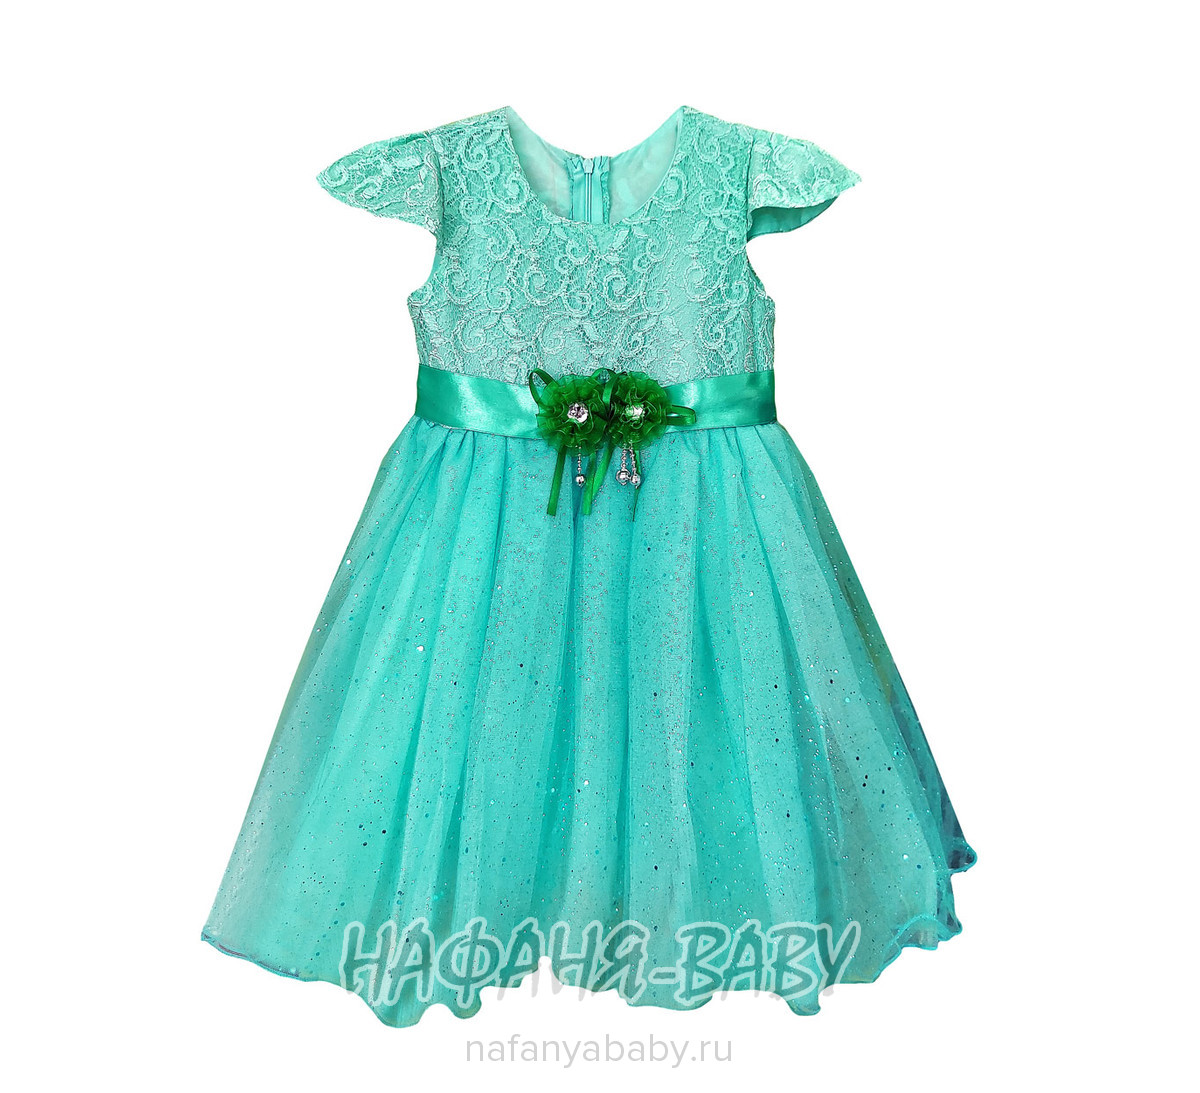 Детское платье KGMART, купить в интернет магазине Нафаня. арт: 2192.